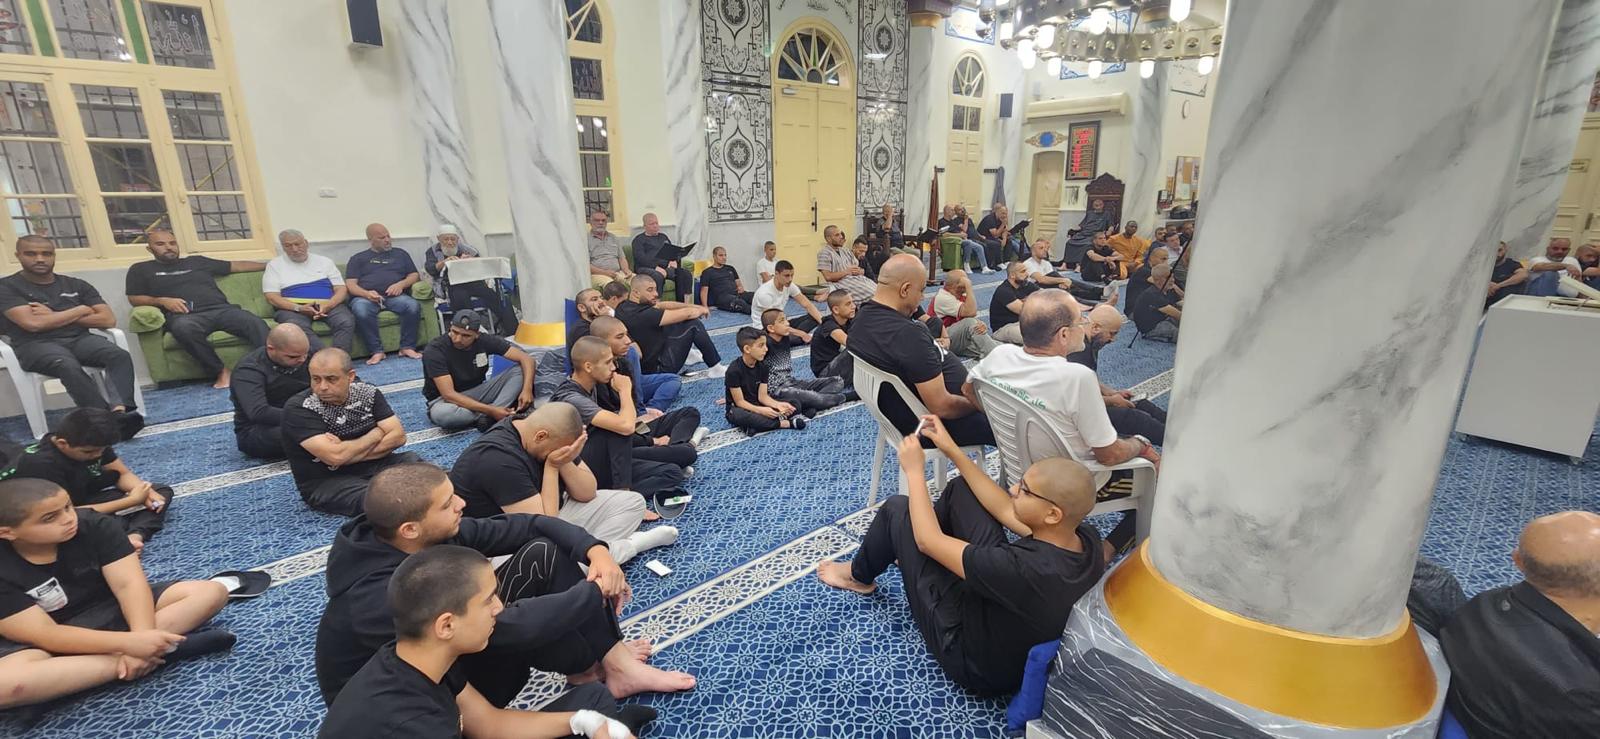 يافا: بالصور الأمسية الإيمانية الأسبوعية في مسجد النزهة وسط حضور غفير